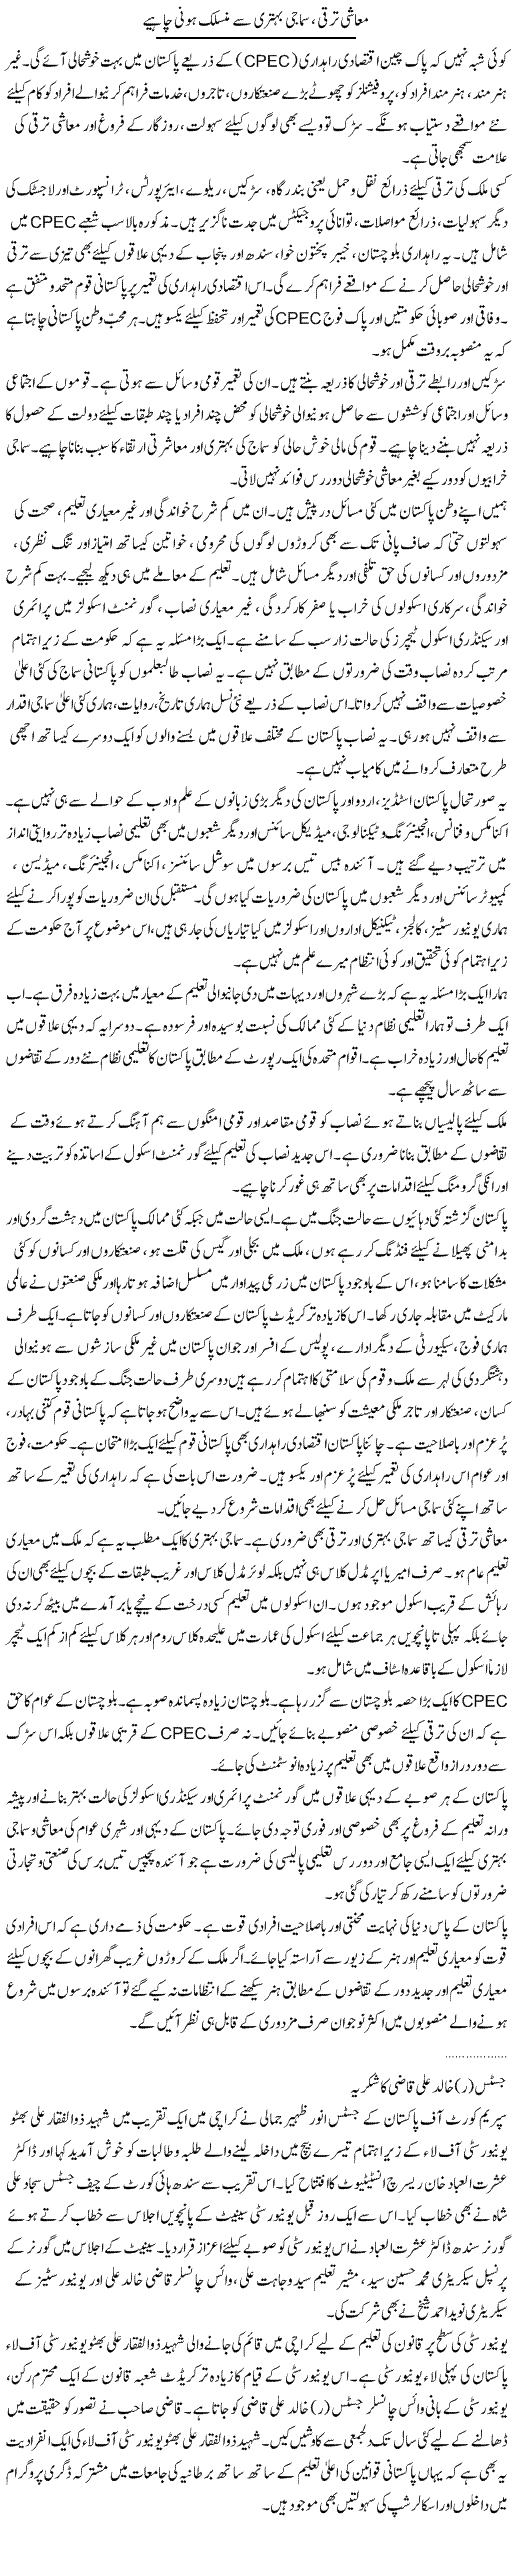 Muashi Taraqqi, Samaji Behtari Se Munsalik Honi Chahye | Dr. Waqar Yousuf Azeemi | Daily Urdu Columns